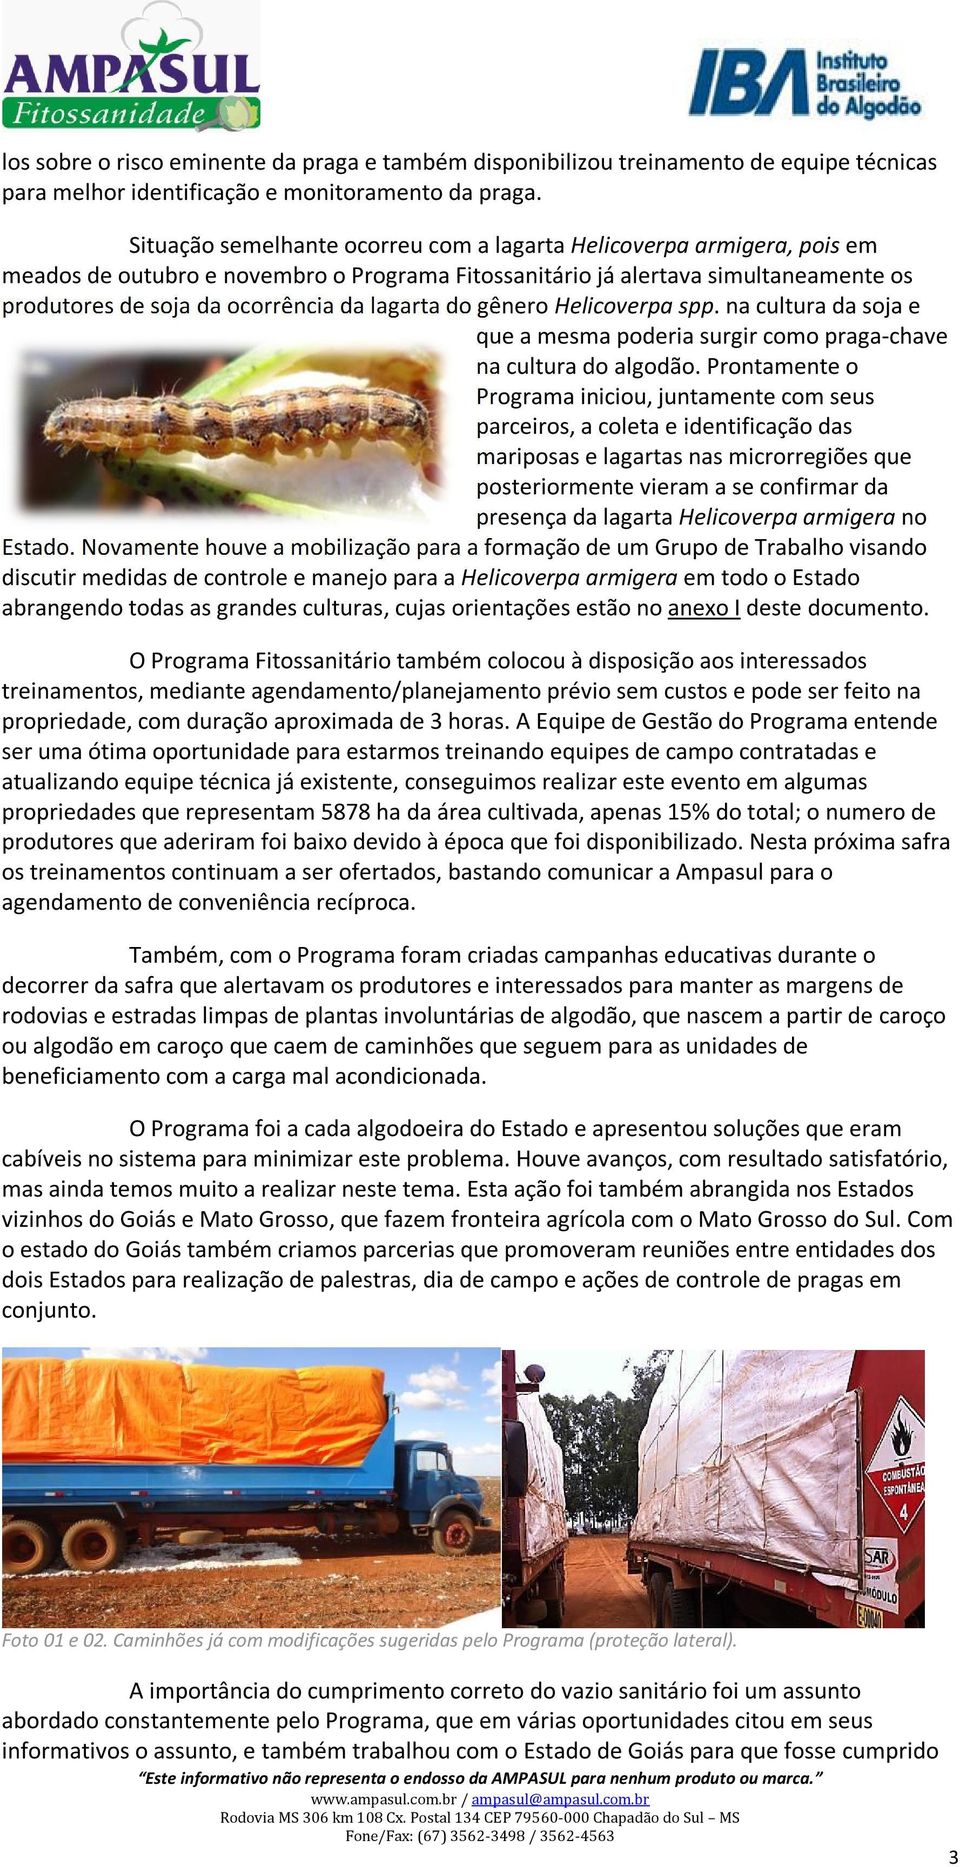 lagarta do gênero Helicoverpa spp. na cultura da soja e que a mesma poderia surgir como praga-chave na cultura do algodão.